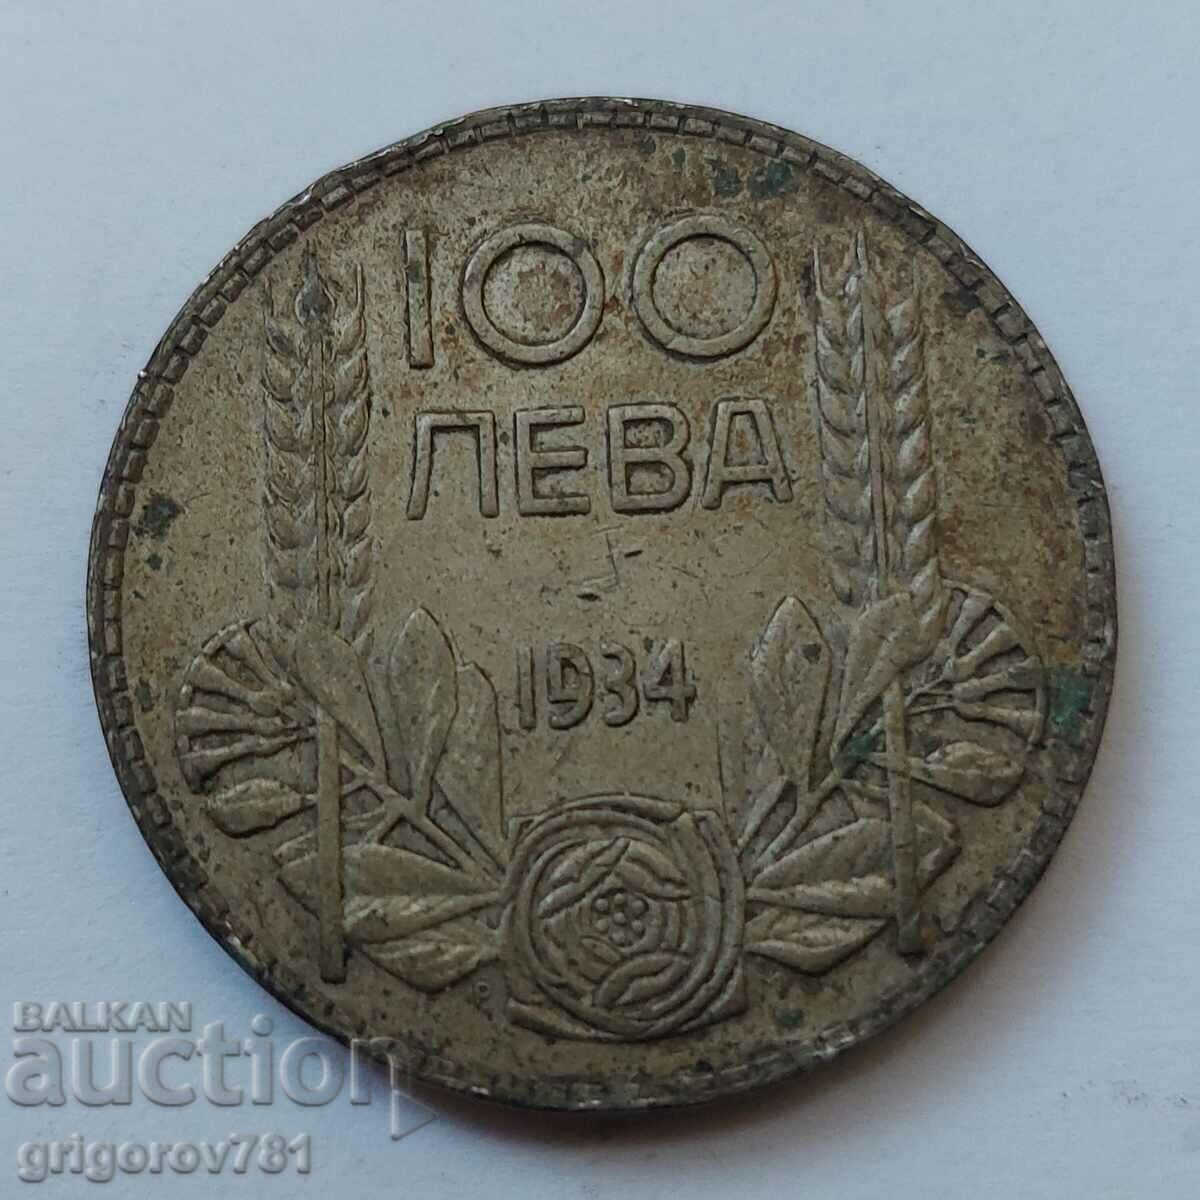 100 leva argint Bulgaria 1934 - monedă de argint #24